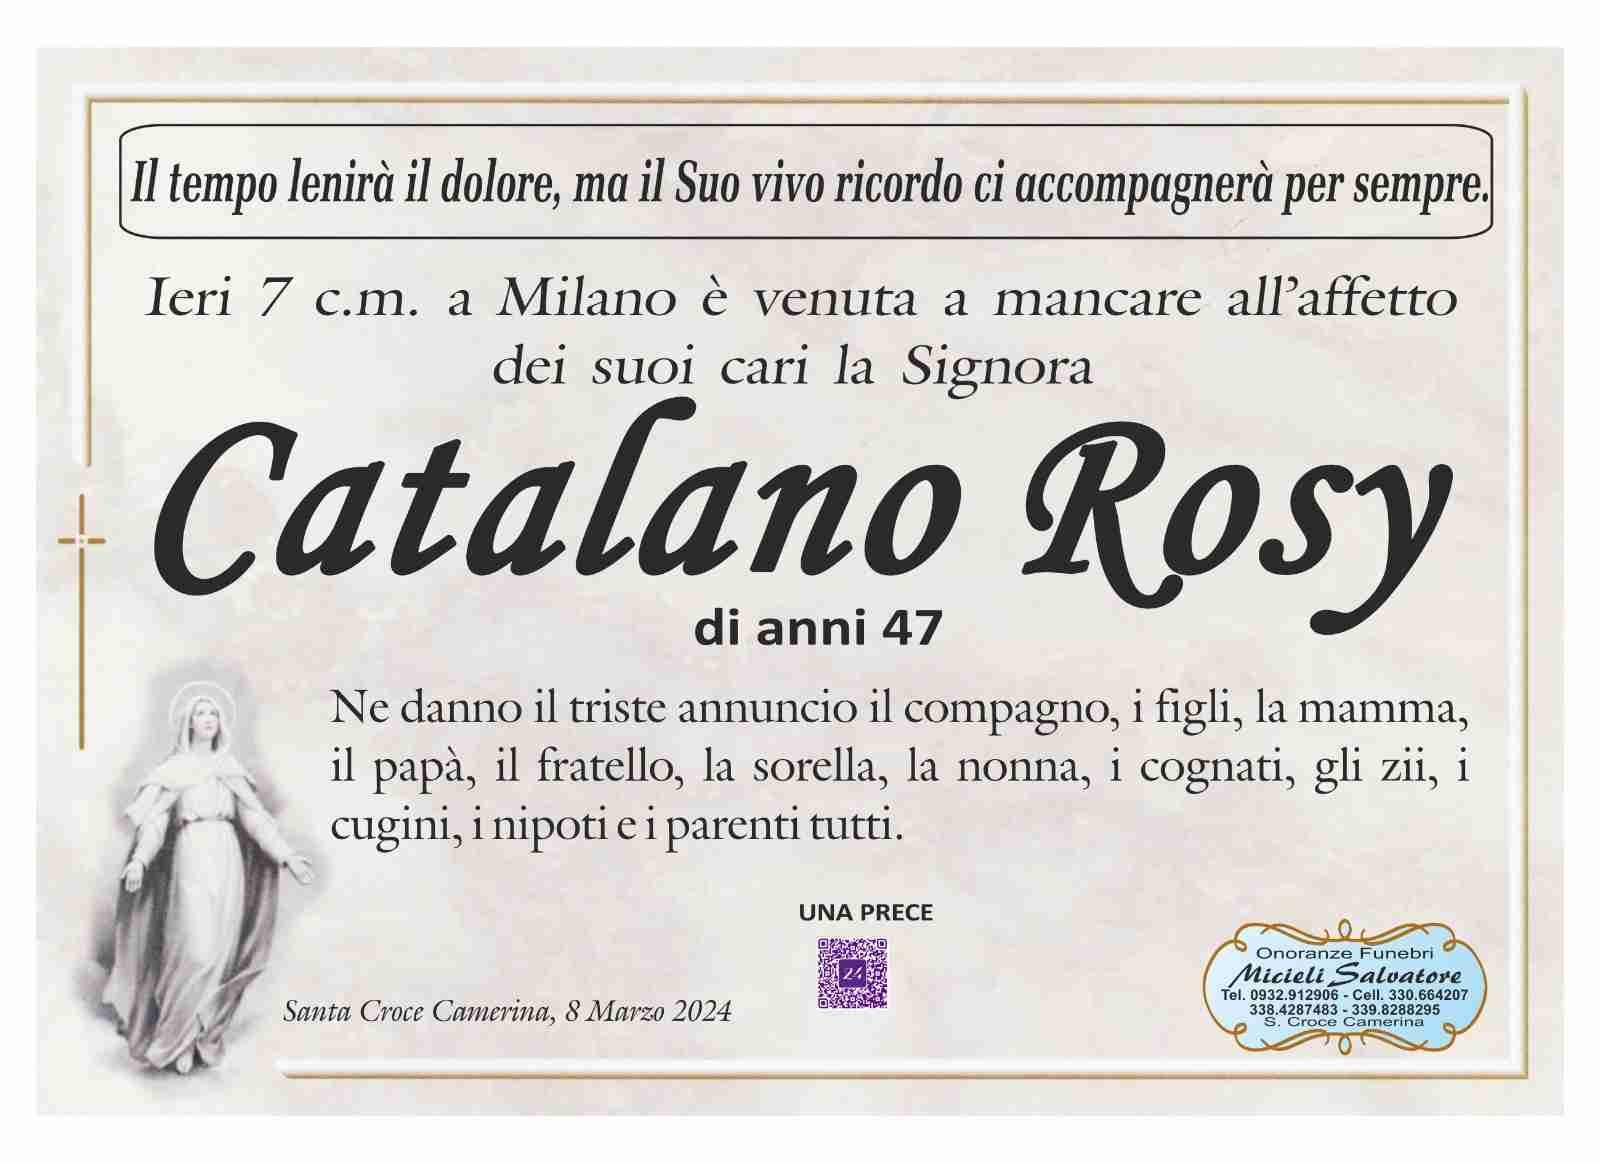 Rosy Catalano